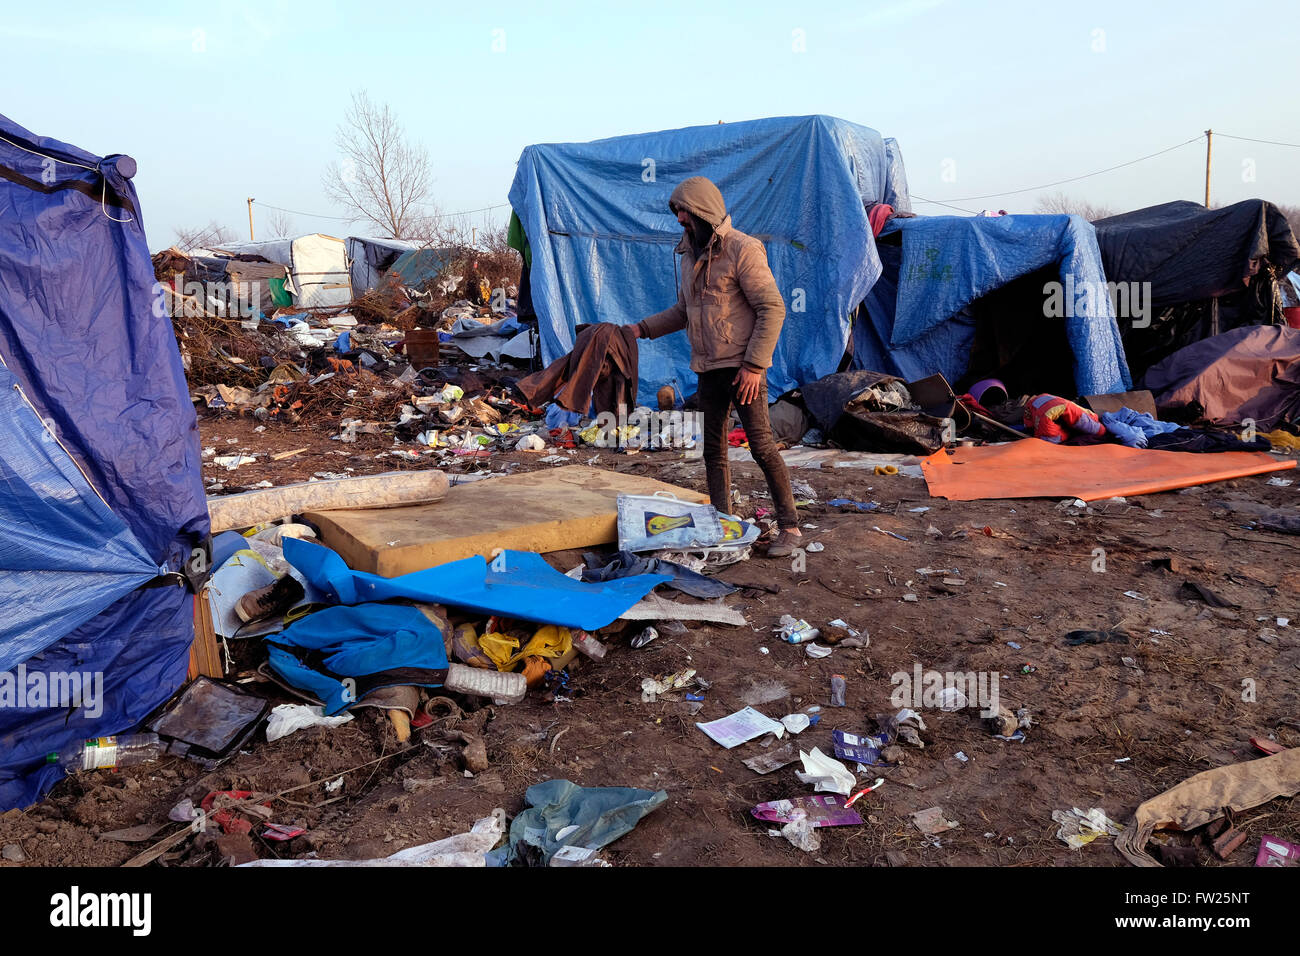 Das Dschungelcamp Fluchtling Migranten In Calais Frankreich Wo Tausende Von Fluchtlingen In Schlammigen Und Verwahrlosten Zustand Der Hoffnung Gelebt Haben Stockfotografie Alamy